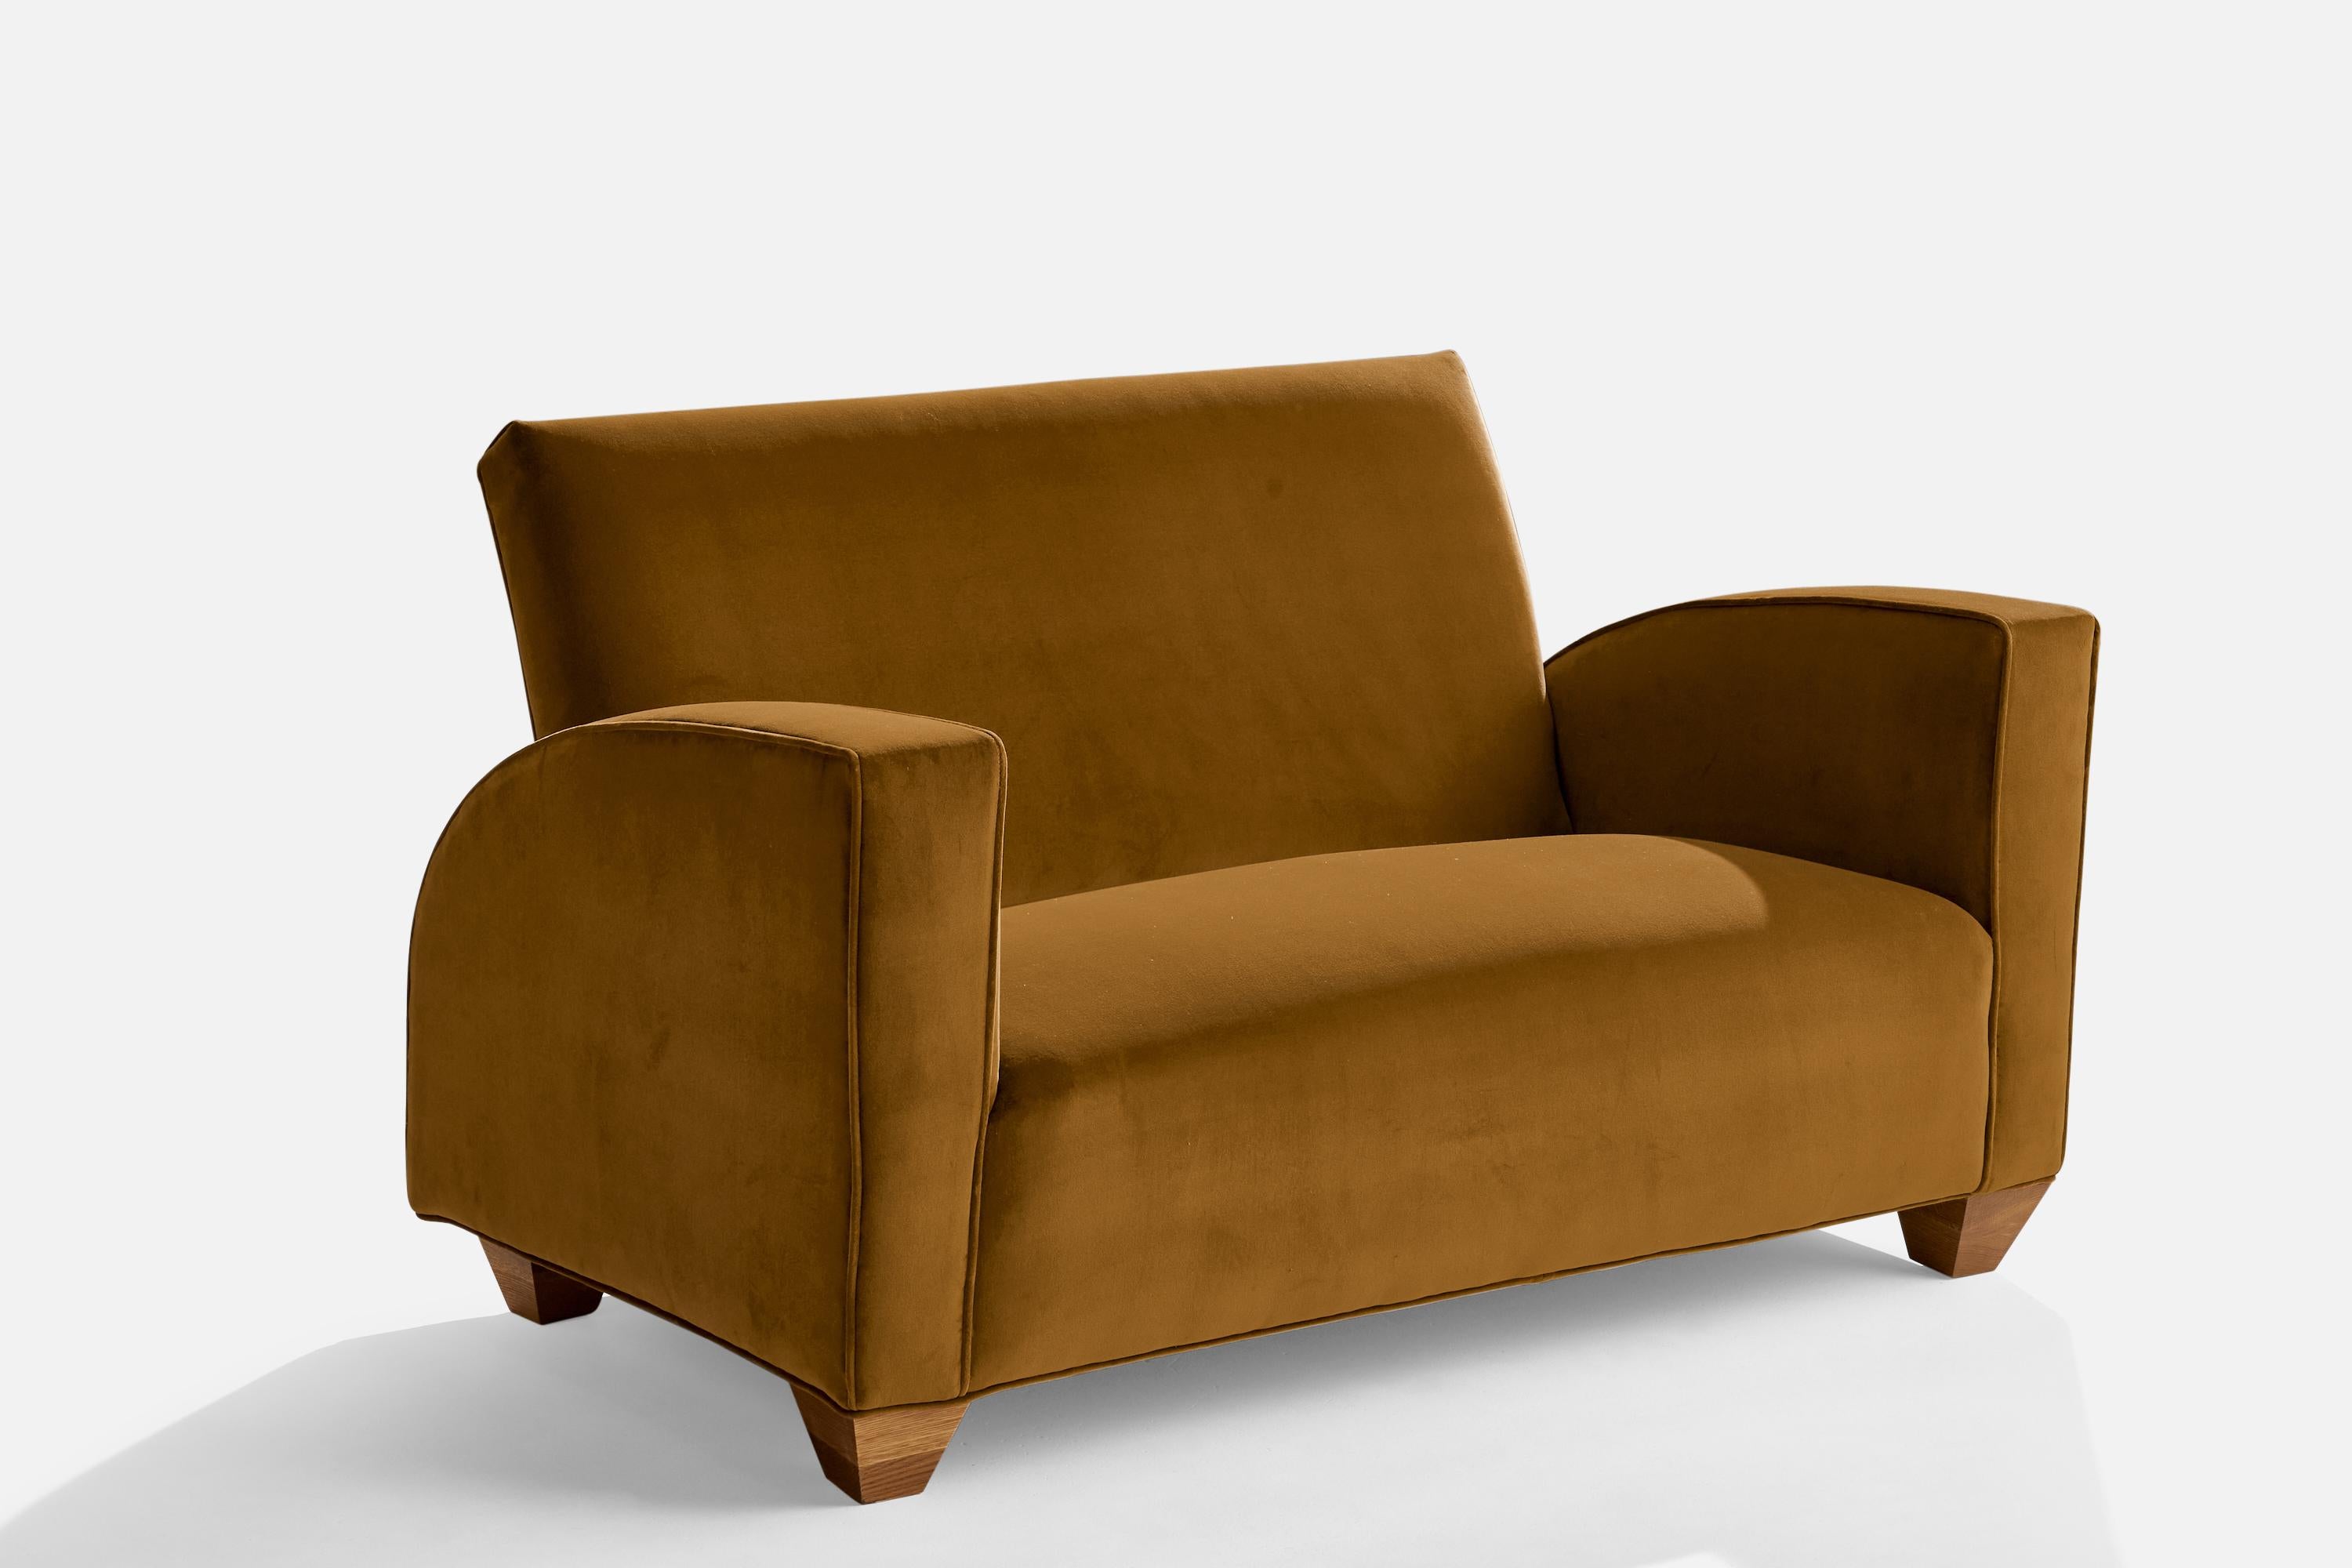 Kleines zweisitziges Sofa aus Ulme und beige-braunem Samt, entworfen und hergestellt in Schweden, 1930er Jahre.

Sitzhöhe 17